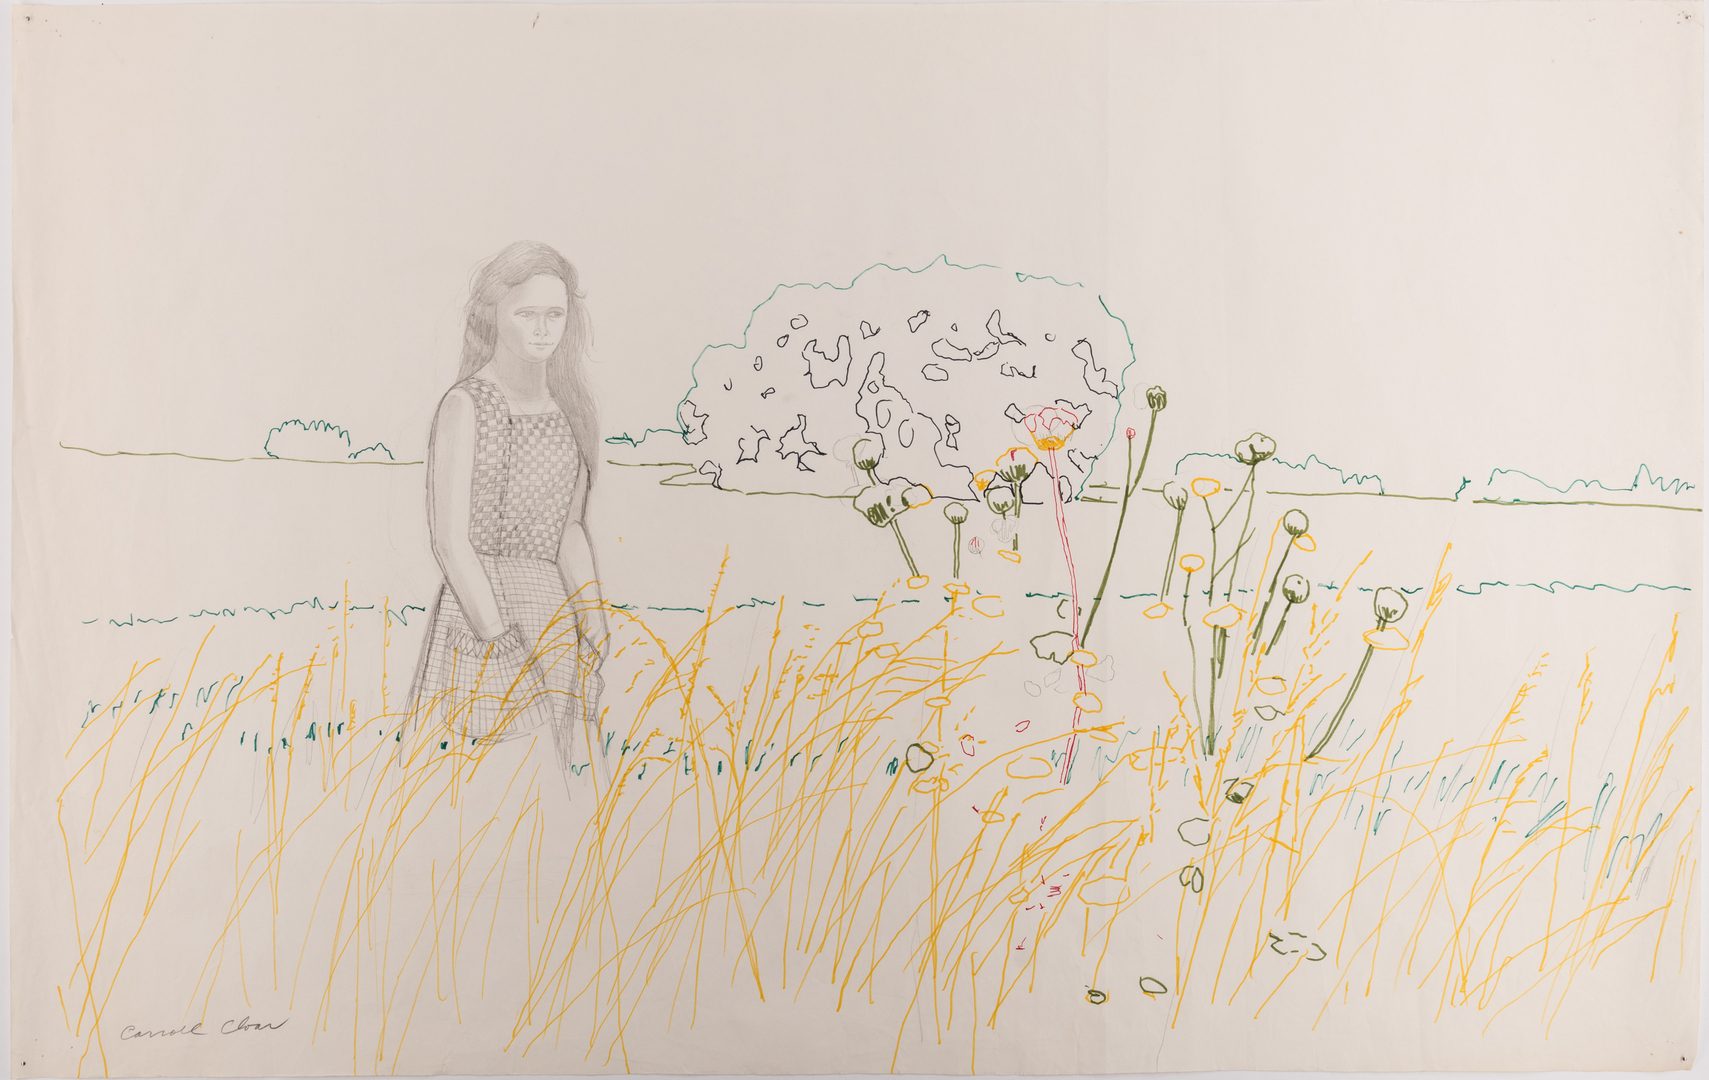 Lot 130: Carroll Cloar Drawing, Woman in Field